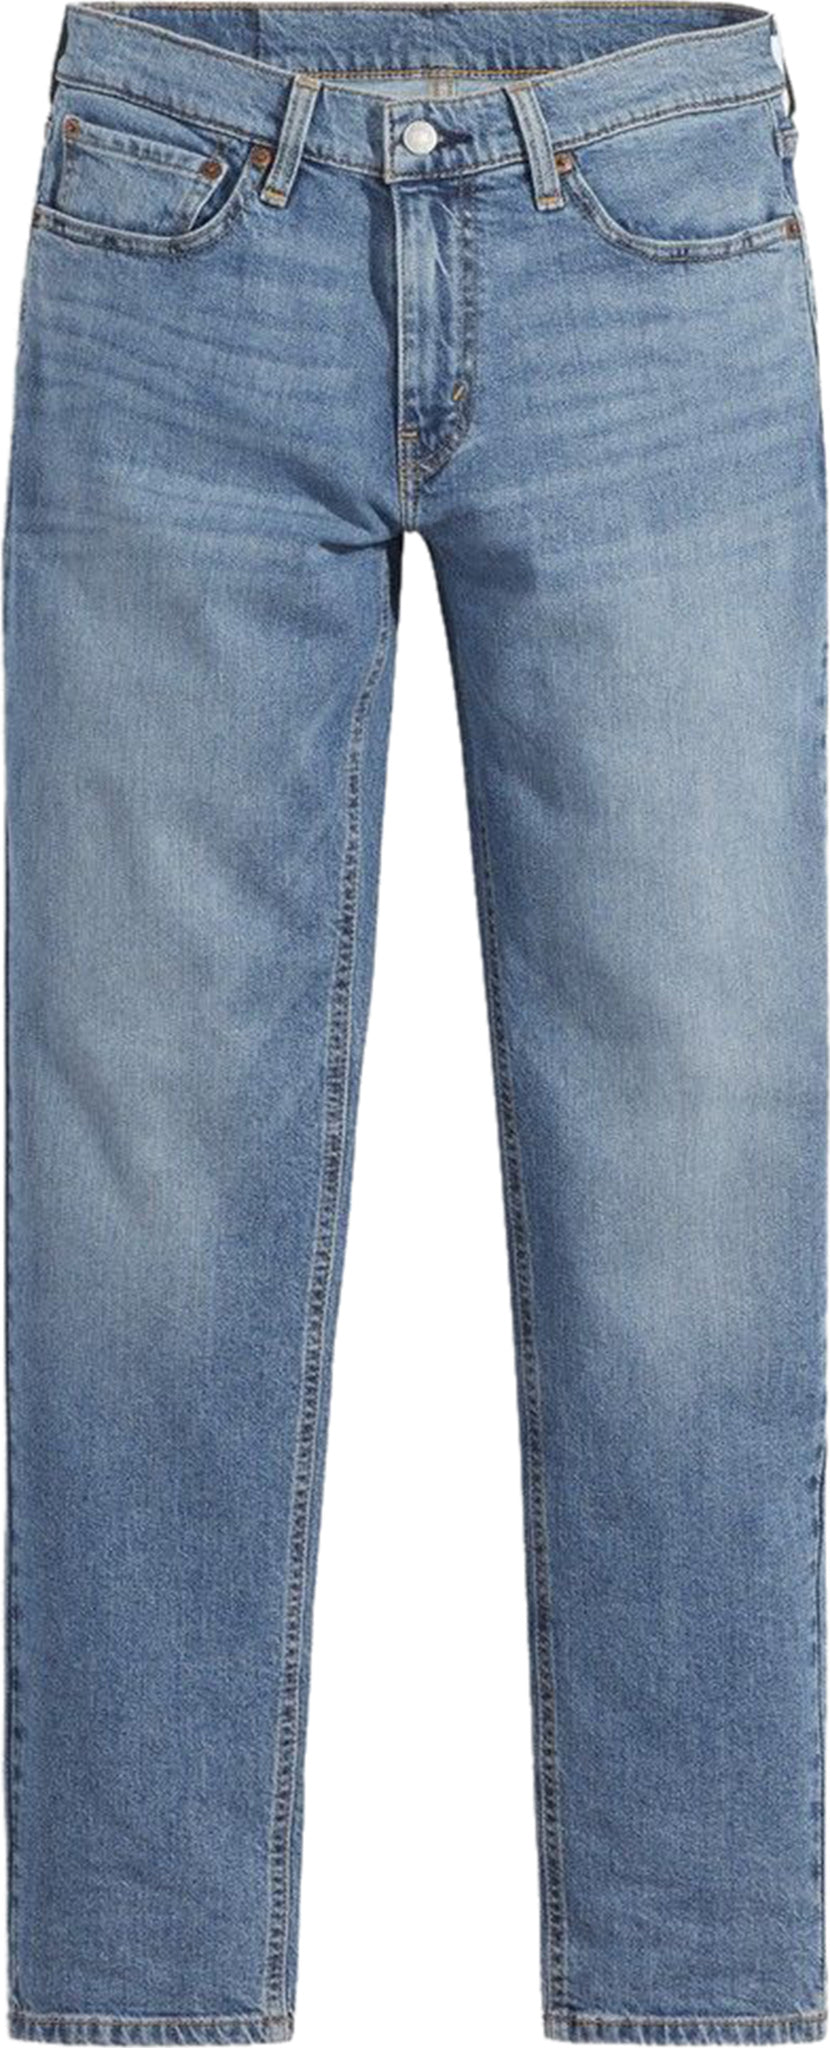 Levi's 531 Athletic Slim Fit Jeans - Men's | The Last Hunt